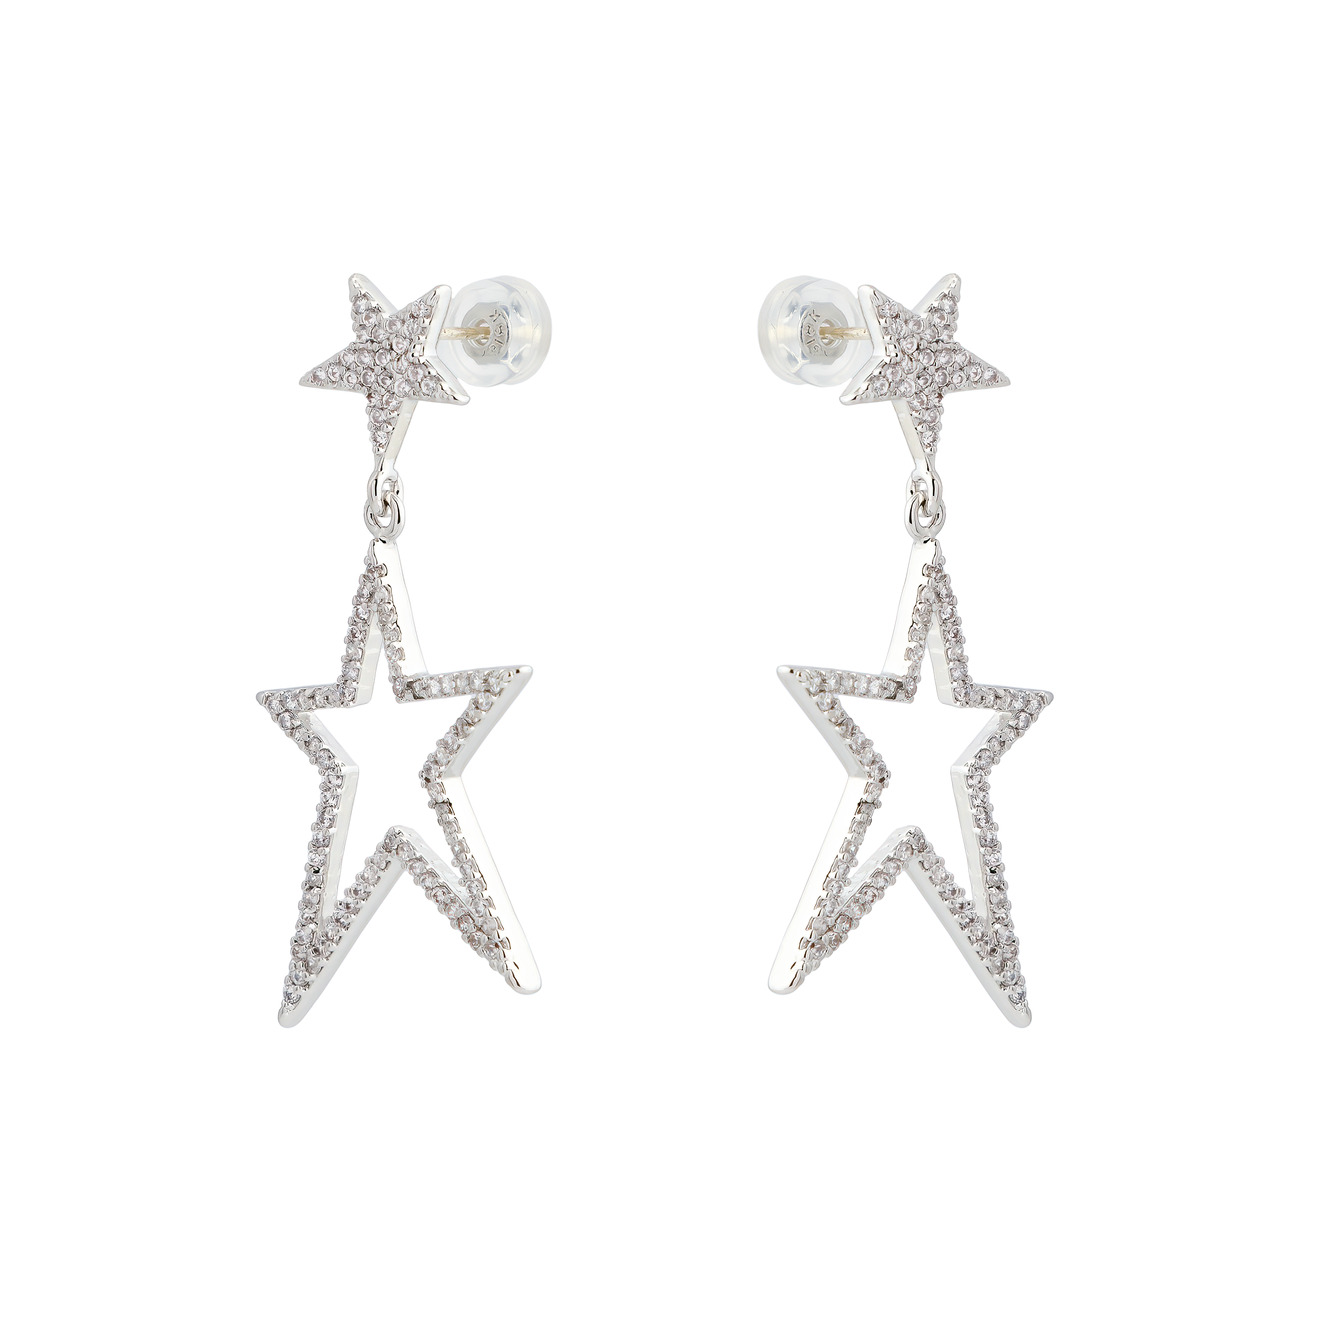 Herald Percy Серебристые тонкие серьги-звезды с кристаллами цена и фото